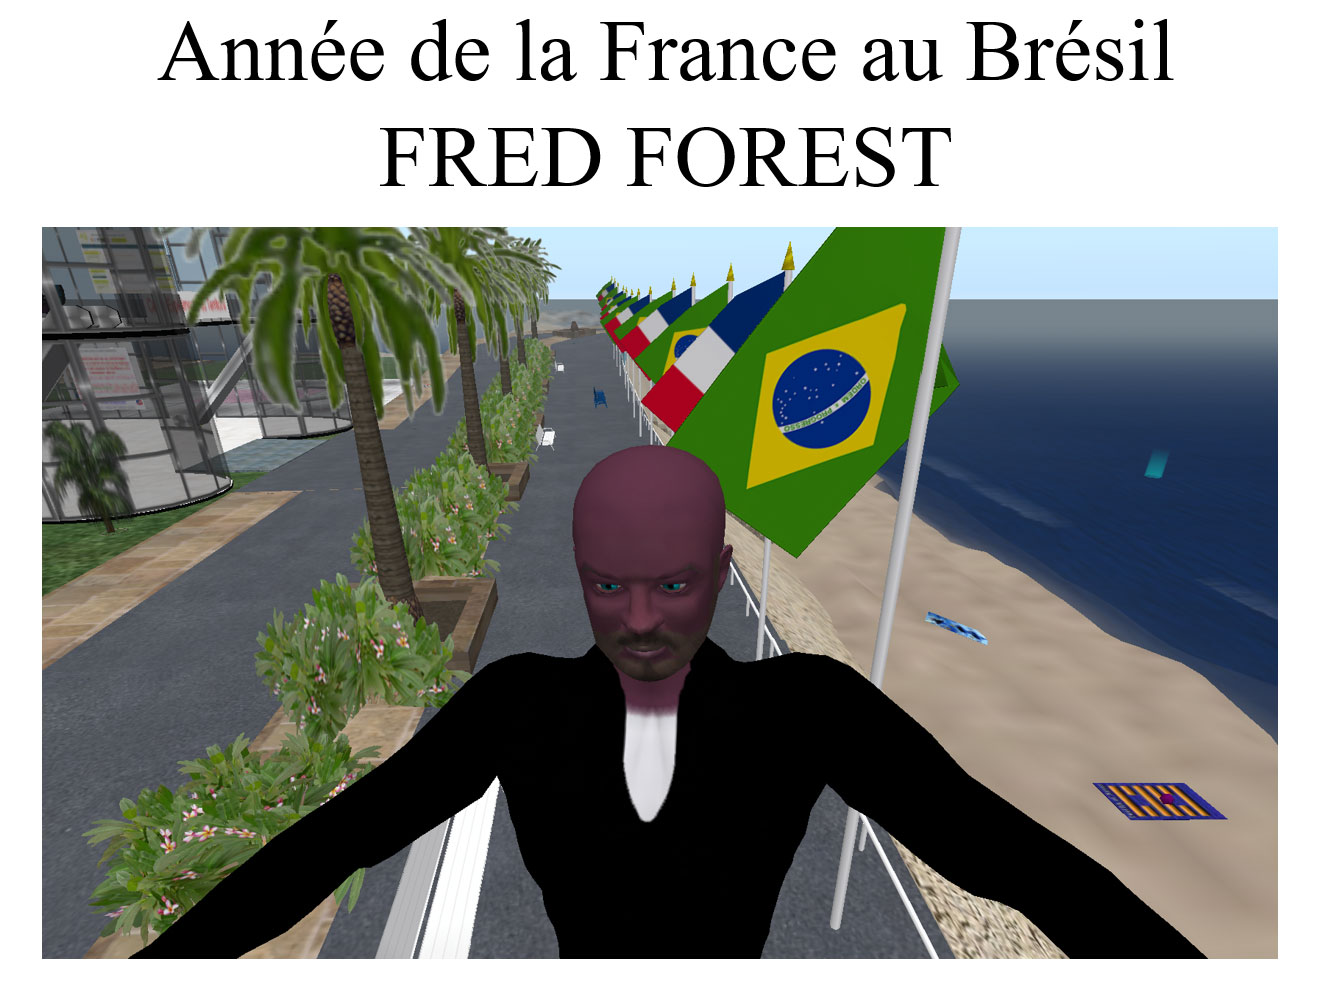 L'année de la France au Brésil